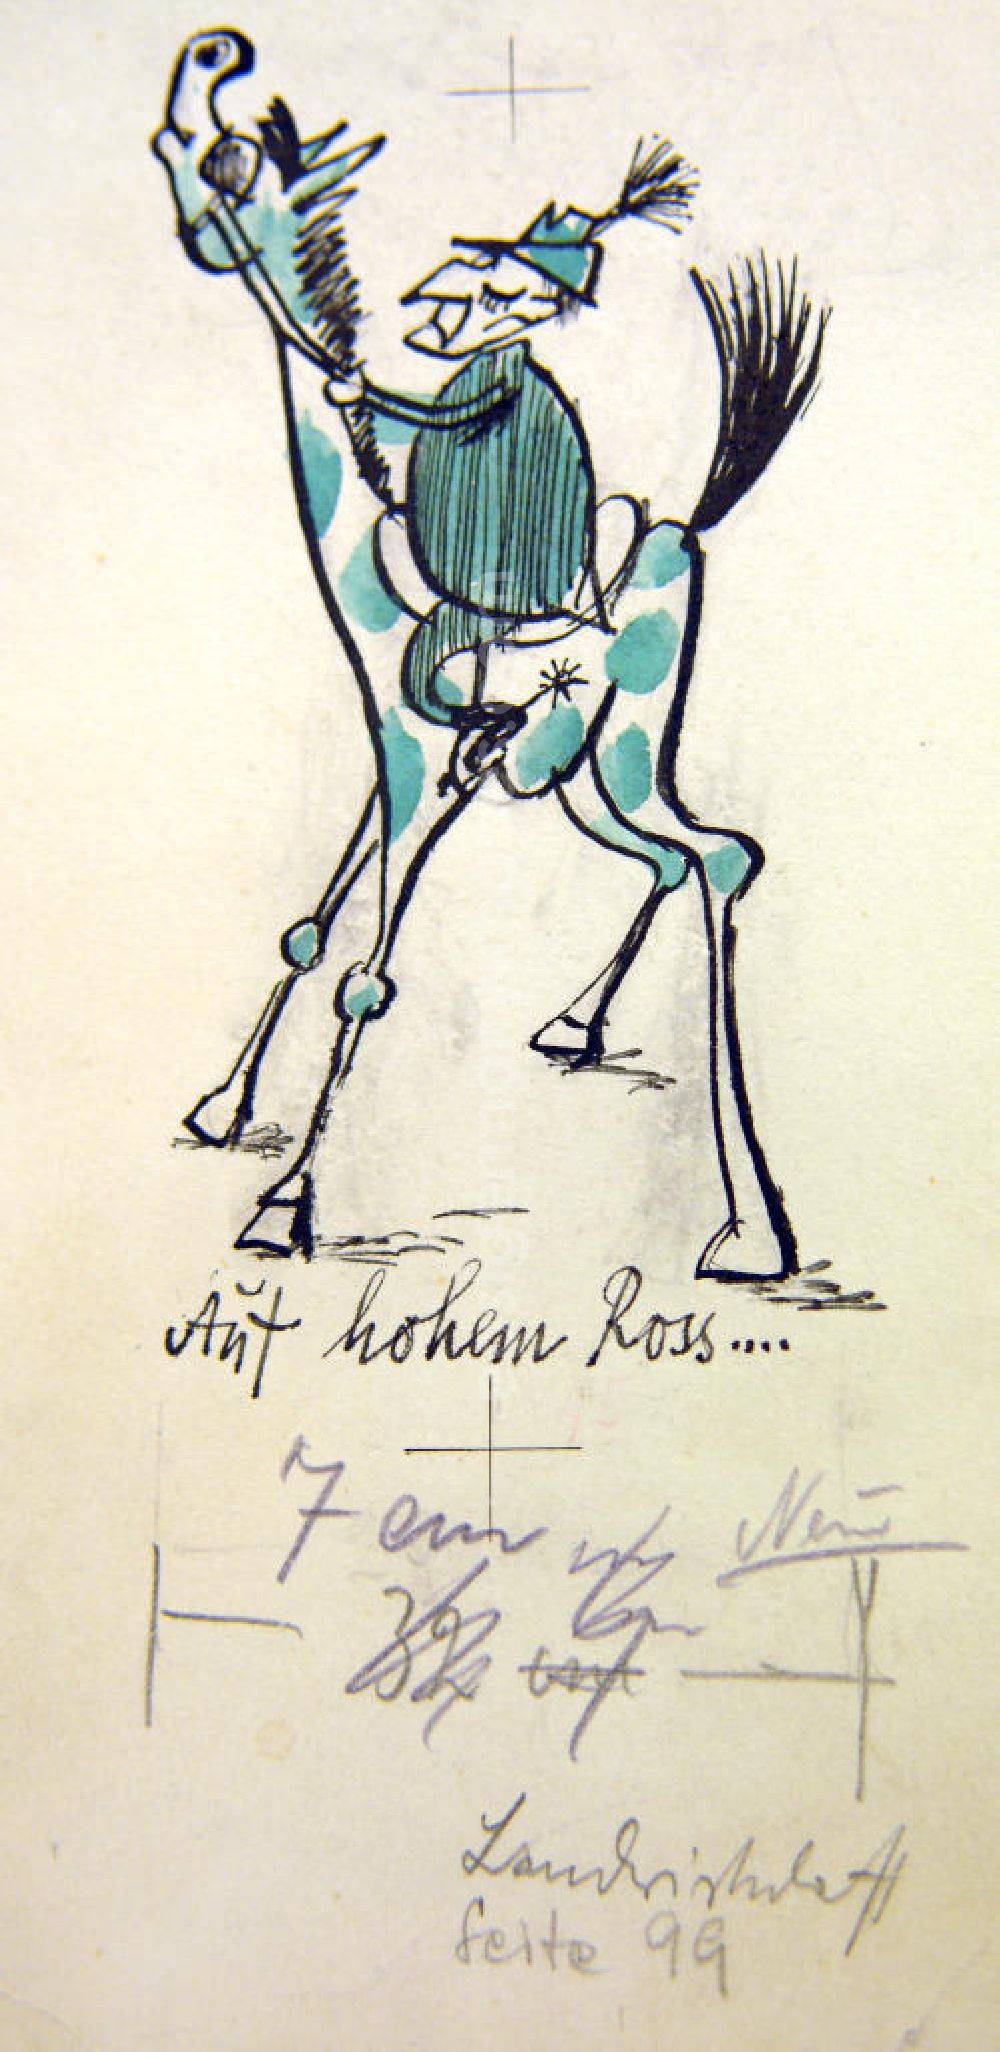 GDR picture archive: Berlin - Zeichnung von Herbert Sandberg Auf hohem Ross 8,